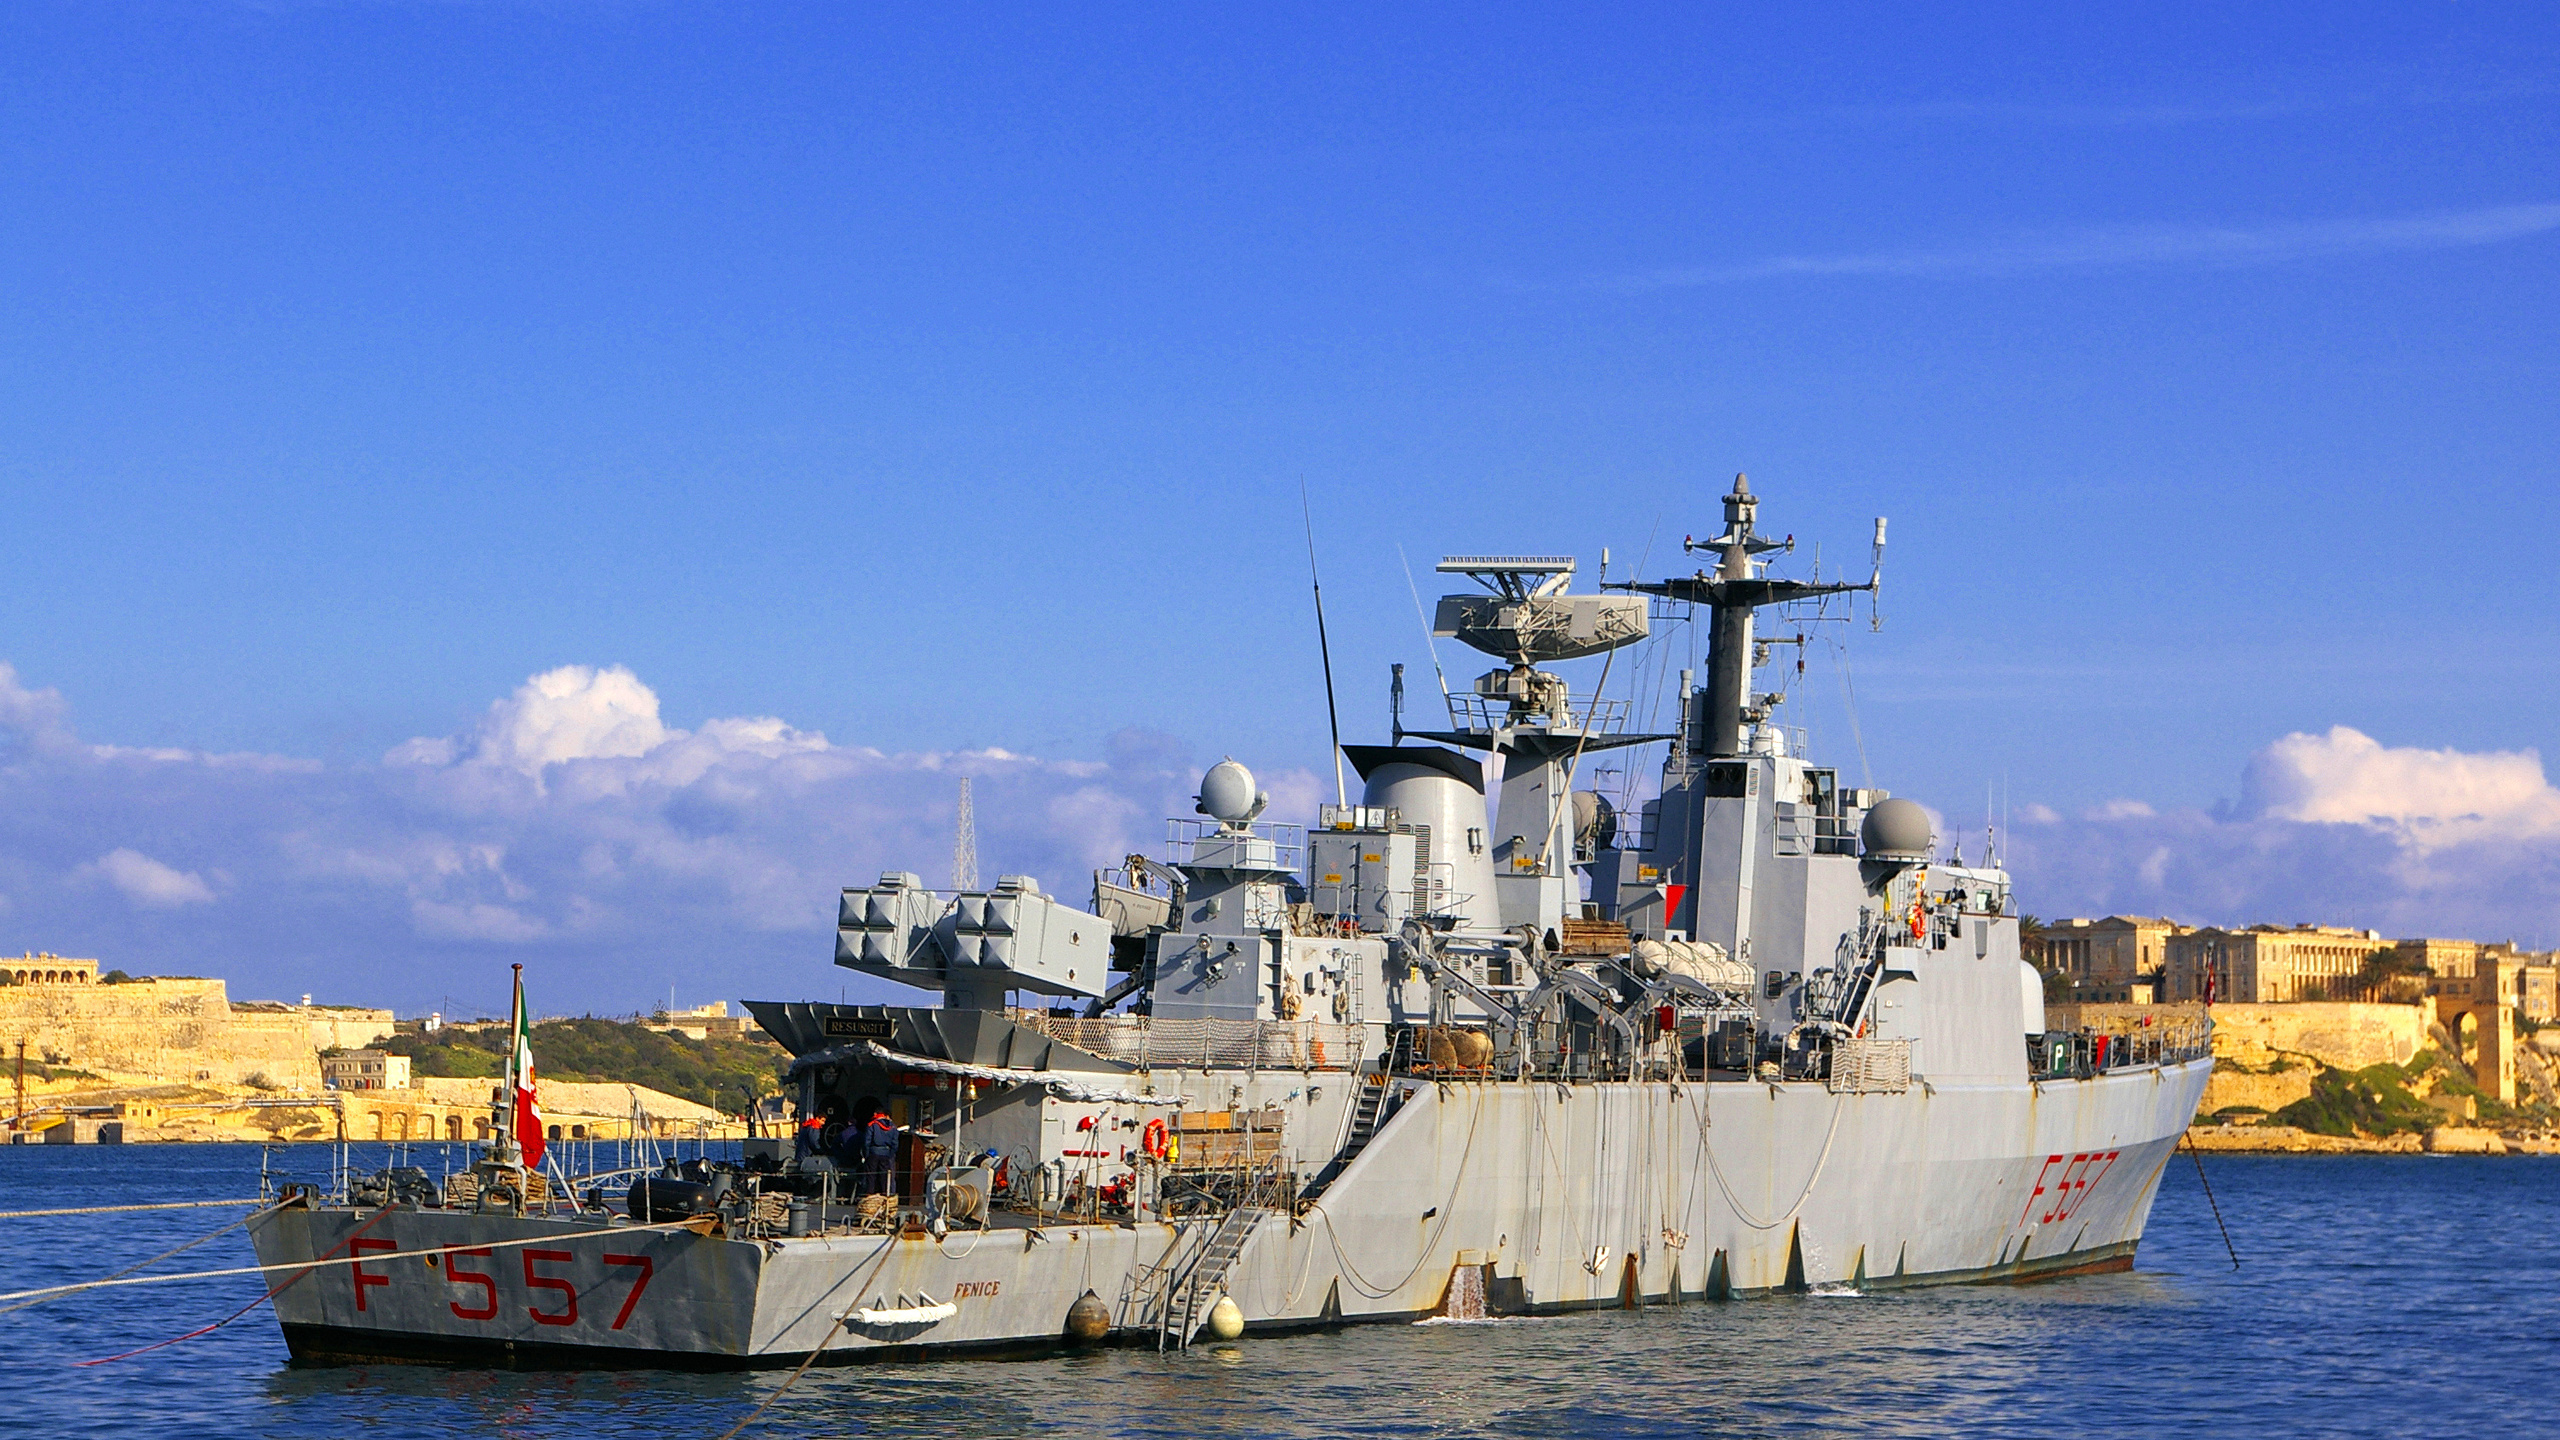 导弹驱逐舰, 两栖战舰, 护卫舰, 海军的船, 军舰 壁纸 2560x1440 允许